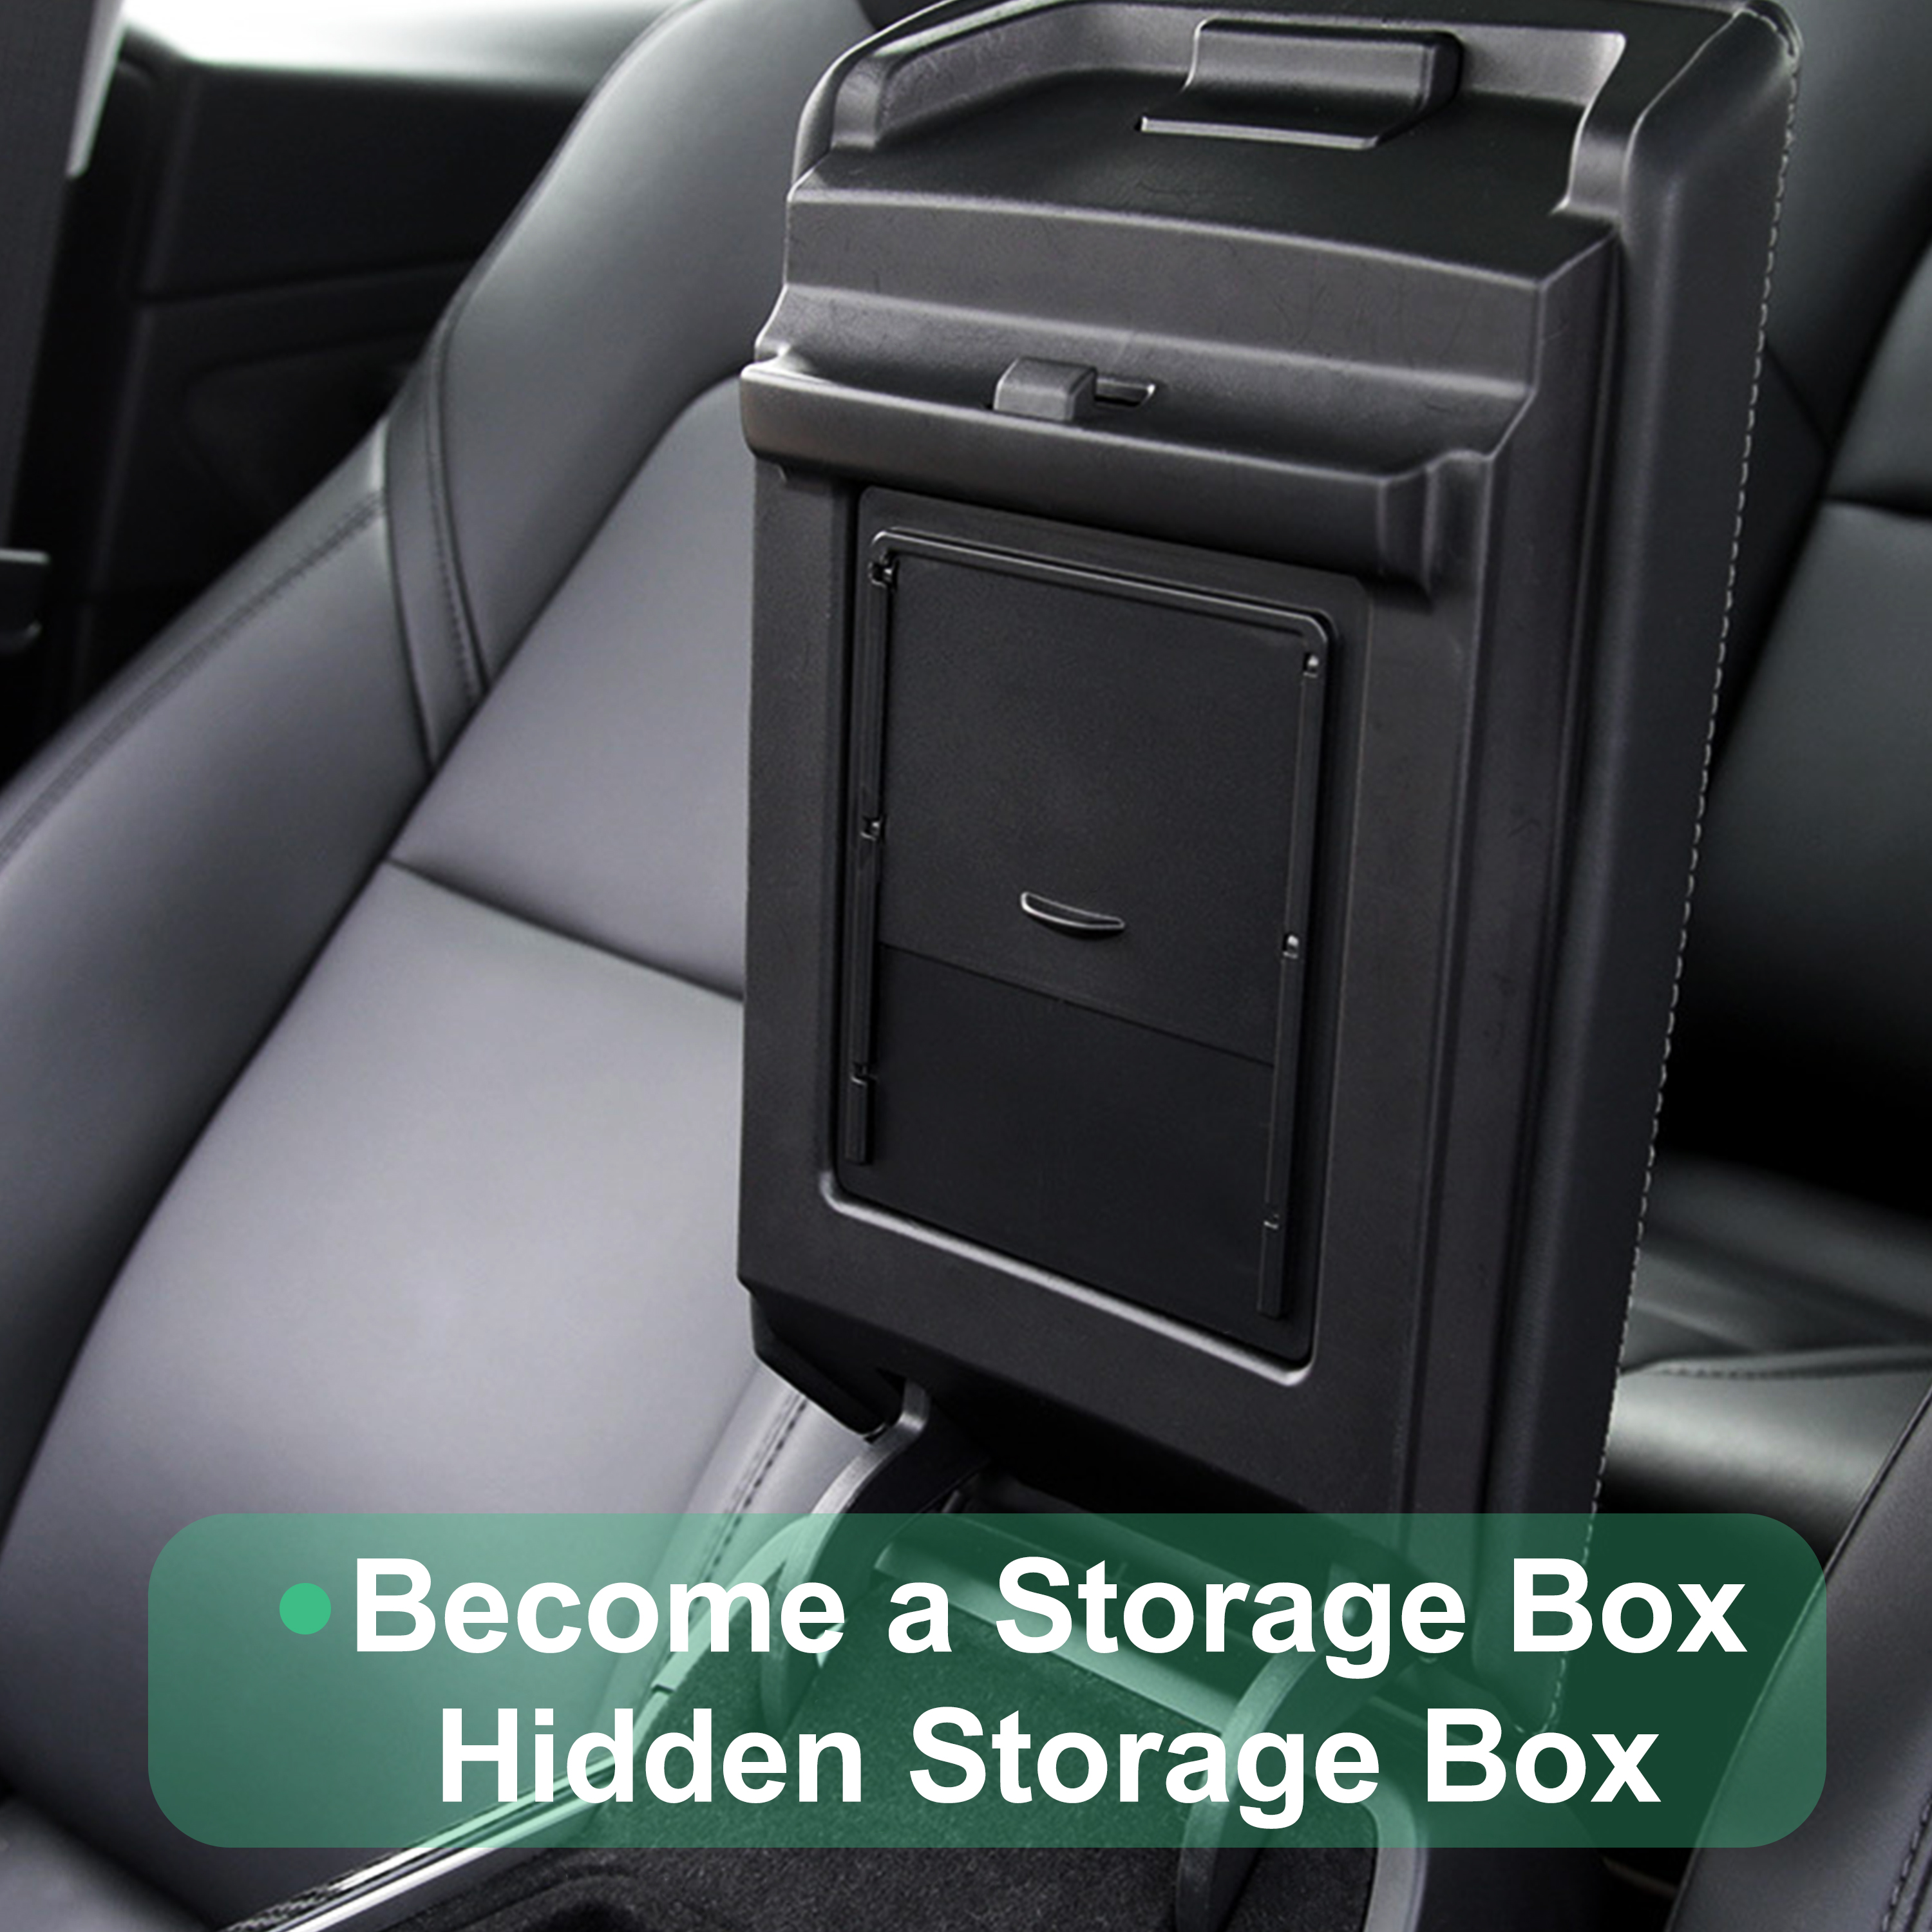 HIDDEN STORAGE CASE Center Console Organizer Box Car Accessories